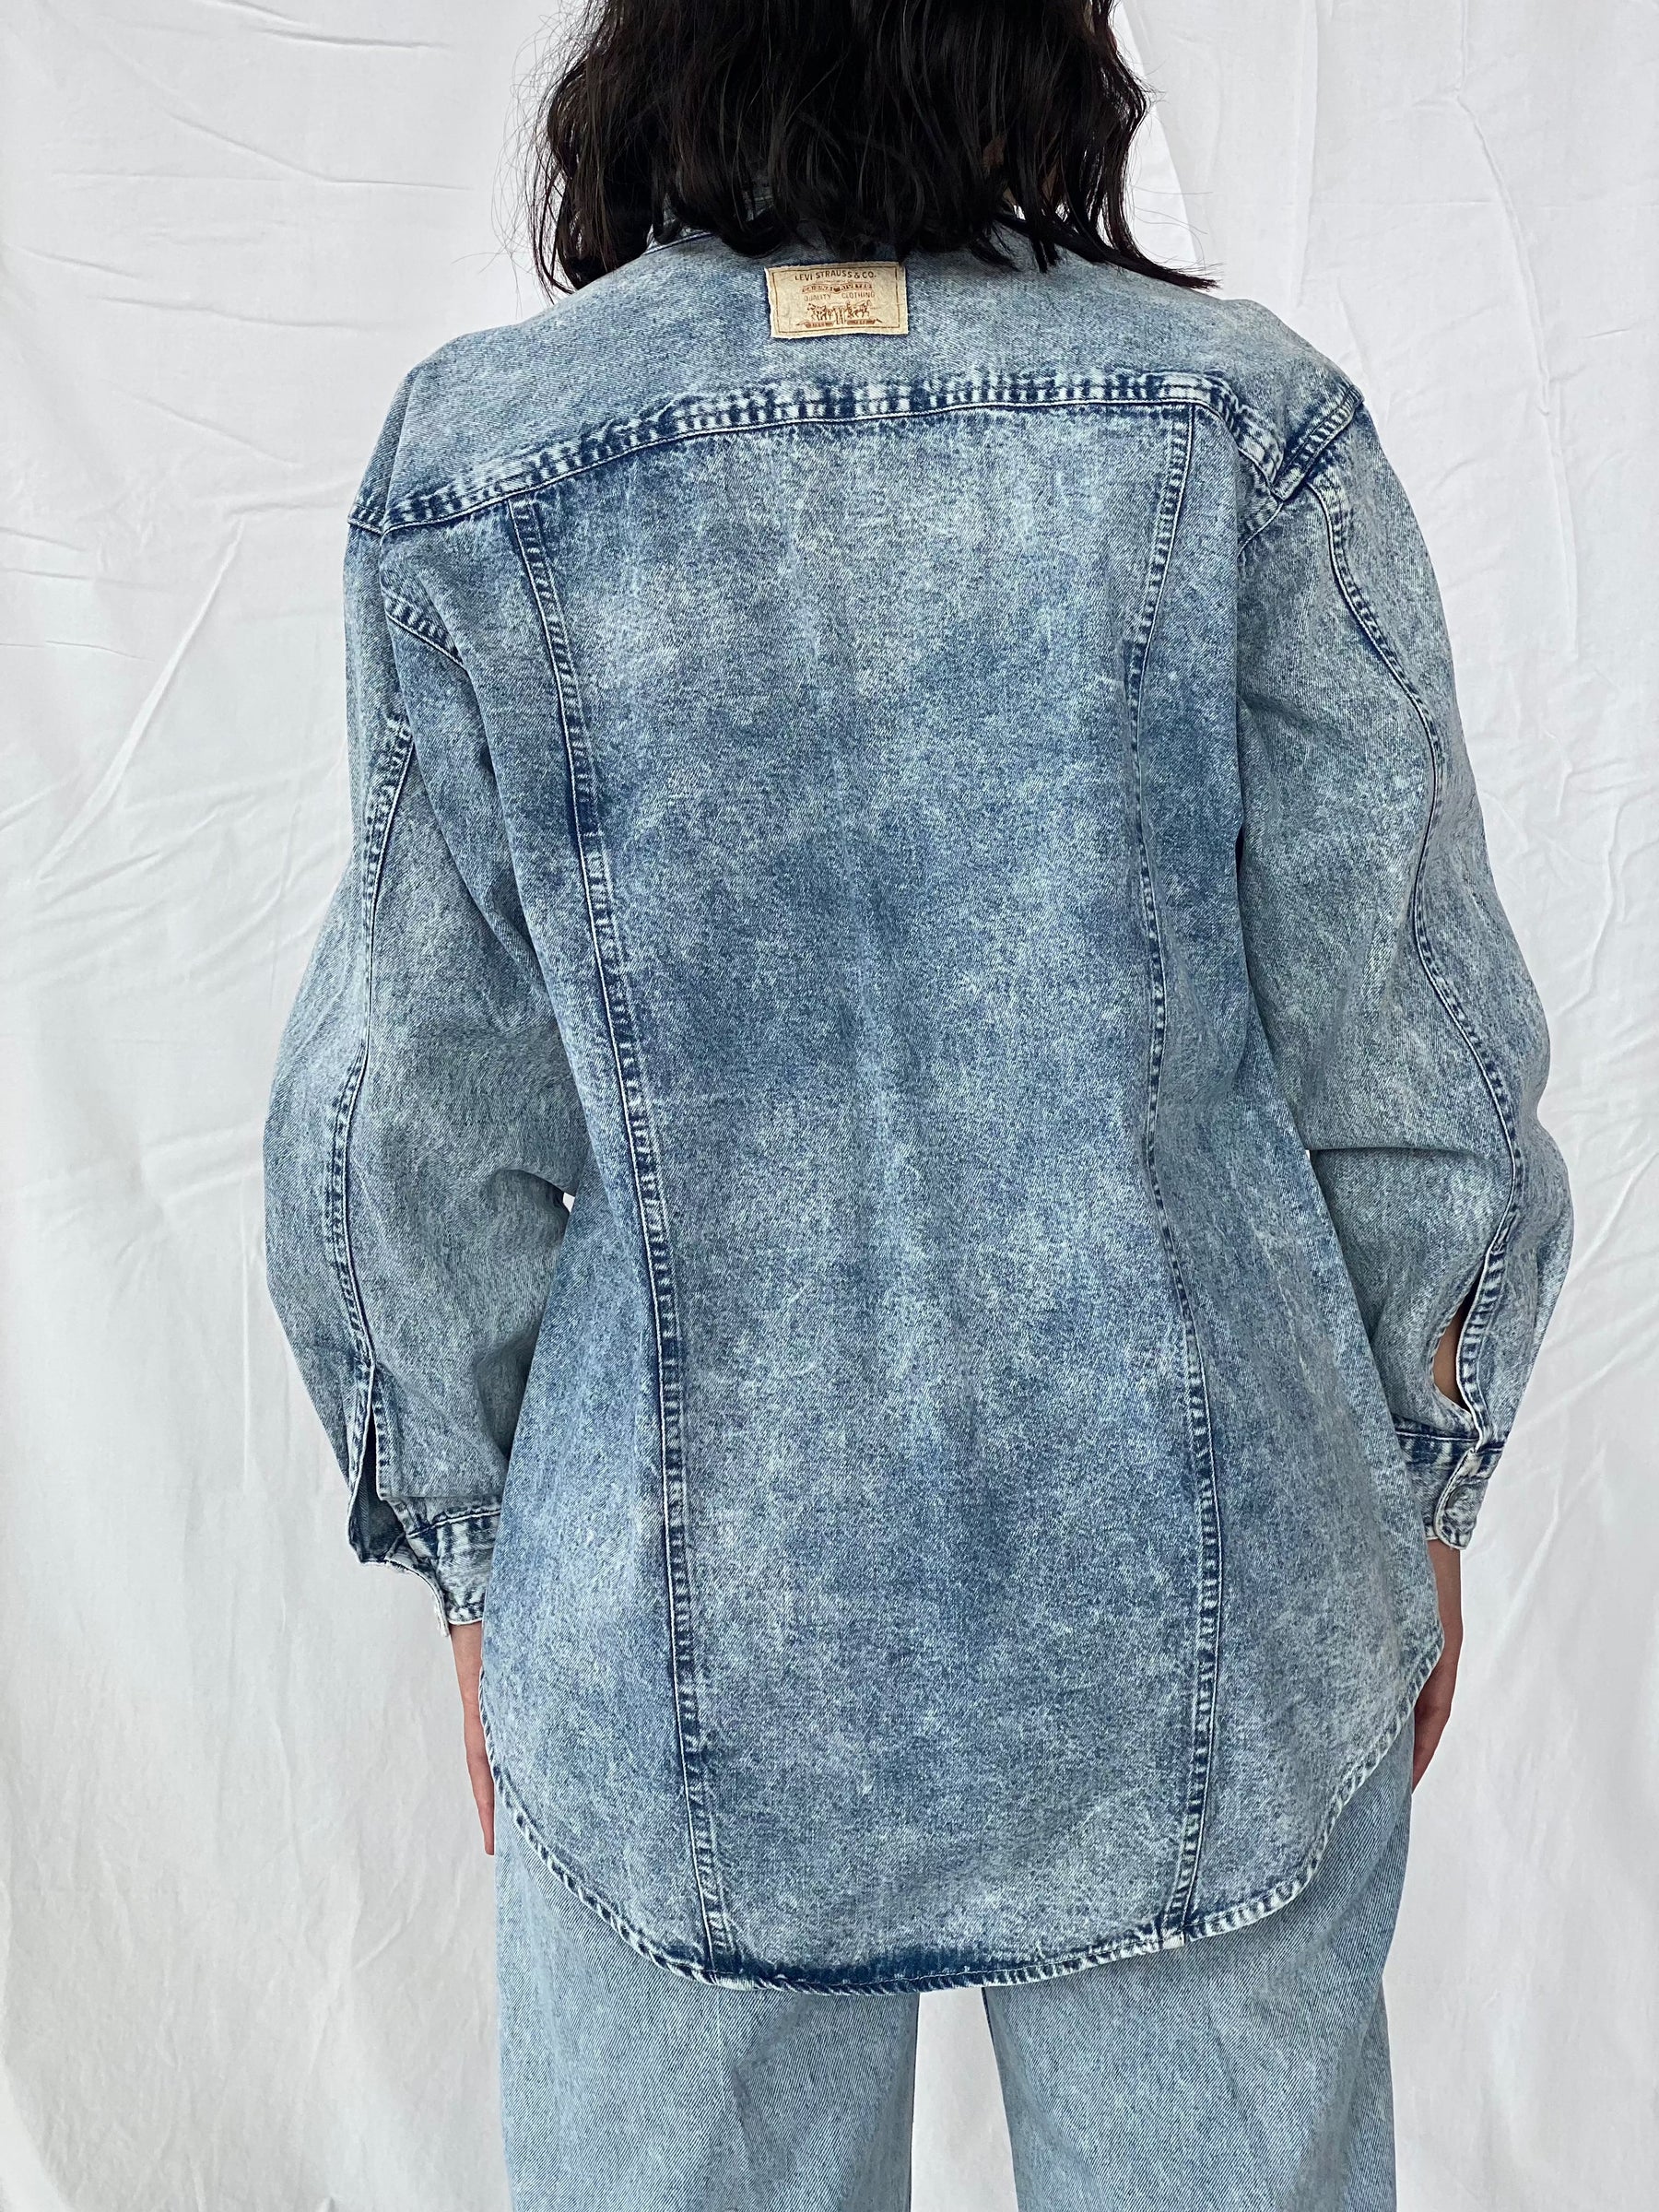 Levi’s Denim Shirt - Balagan Vintage